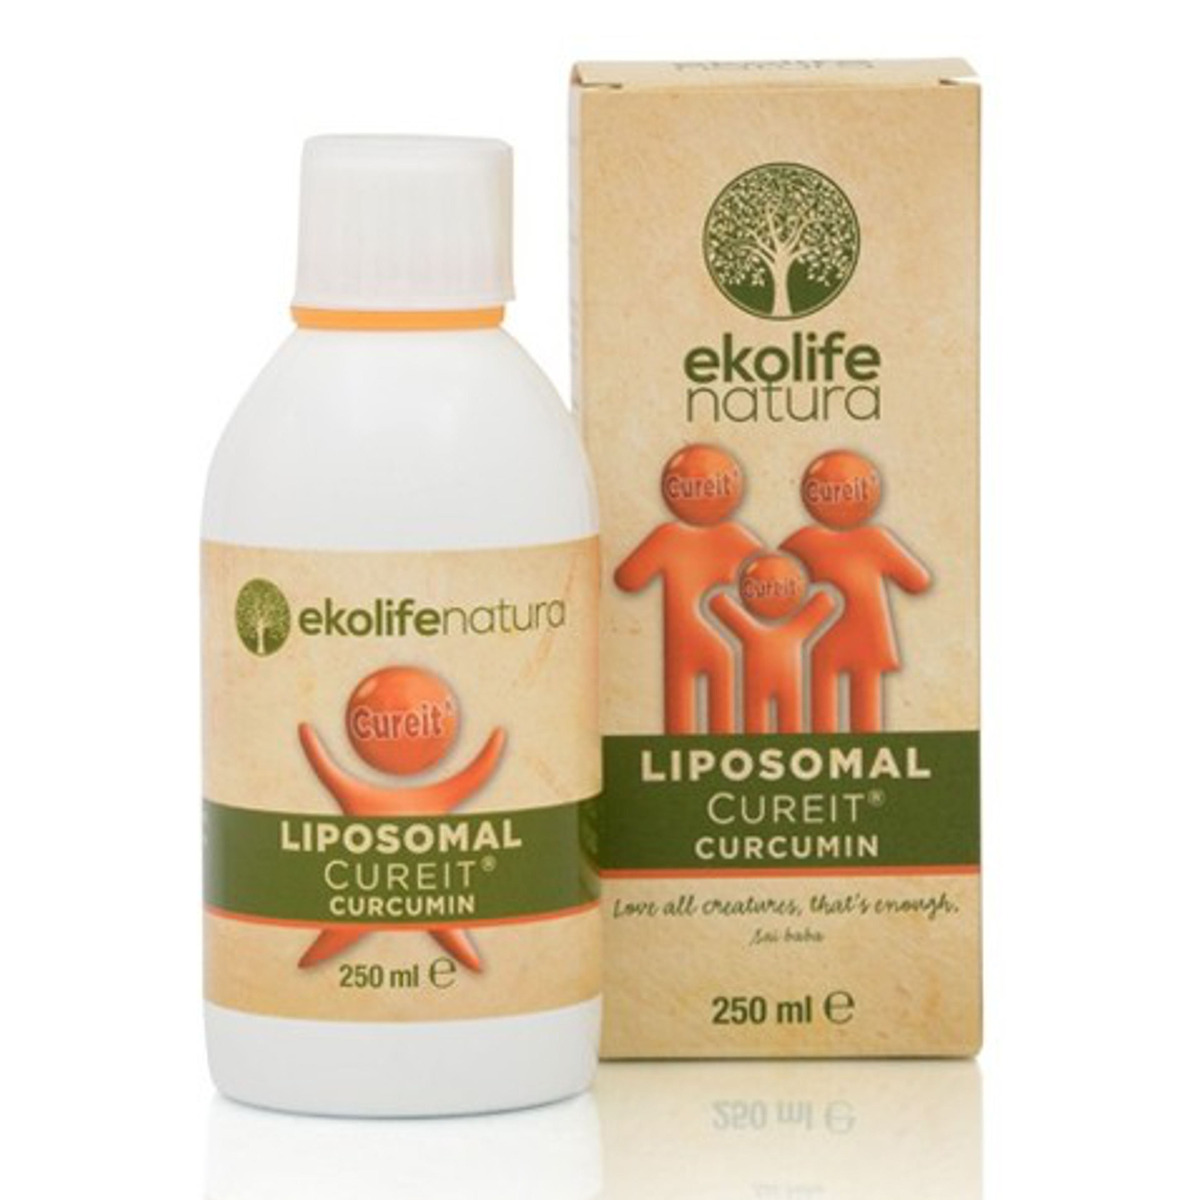 Ekolife Natura Liposomal Cureit® Curcumin 250 ml Ekolife Natura